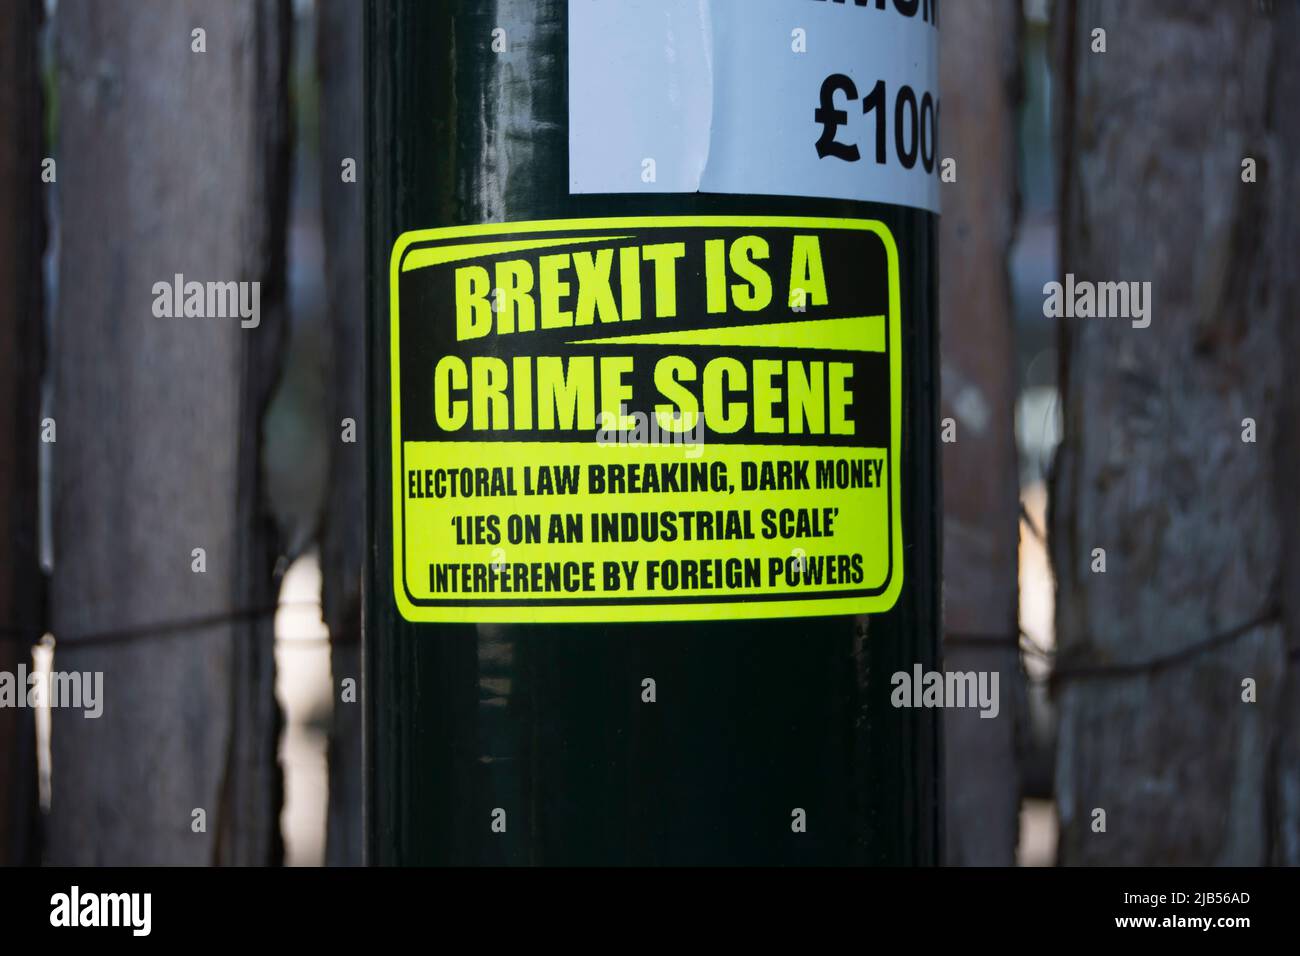 l’etichetta anti-brexit che sostiene la brexit è una scena criminale e che elenca i presunti crimini legati all’uscita della gran bretagna dall’ue, a twickenham, middlesex, inghilterra Foto Stock